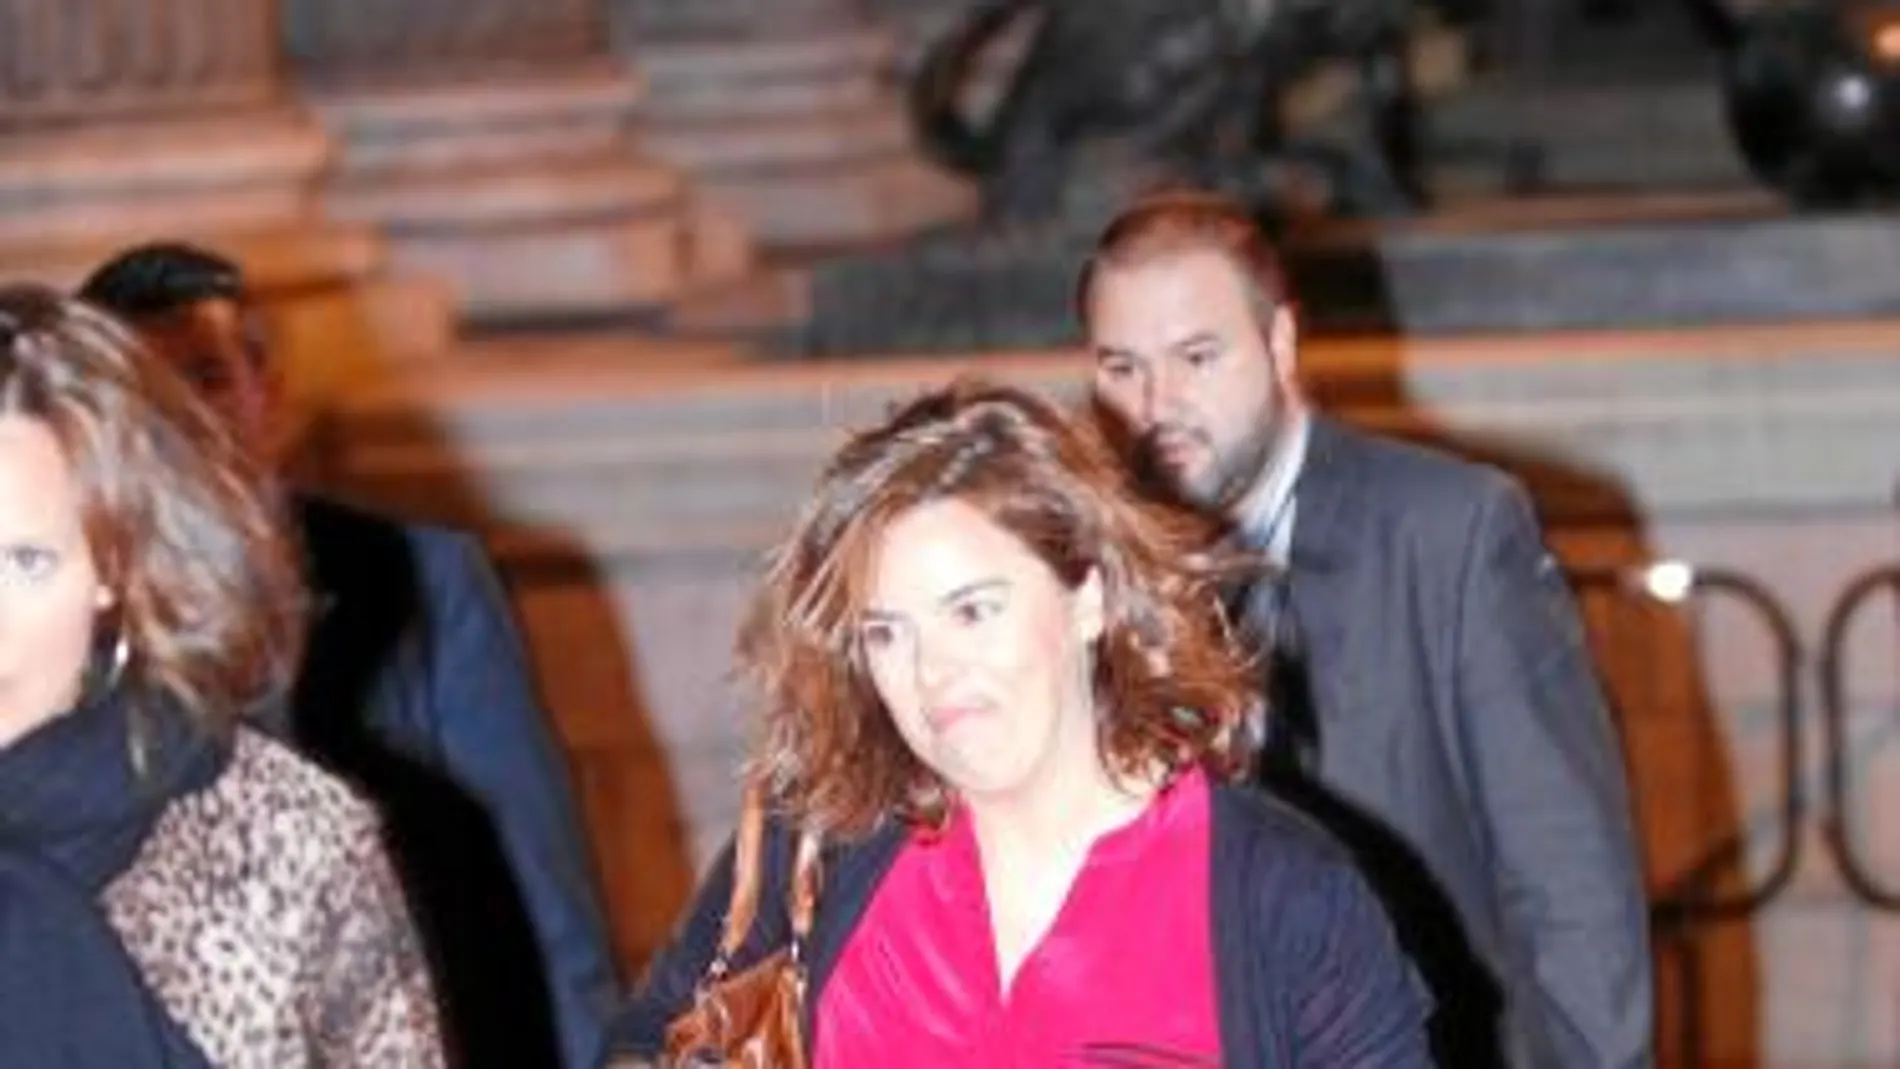 La vicepresidenta, Soraya Saénz de Santamaría, cruzó a pie desde el hotel Palace hasta el Congreso